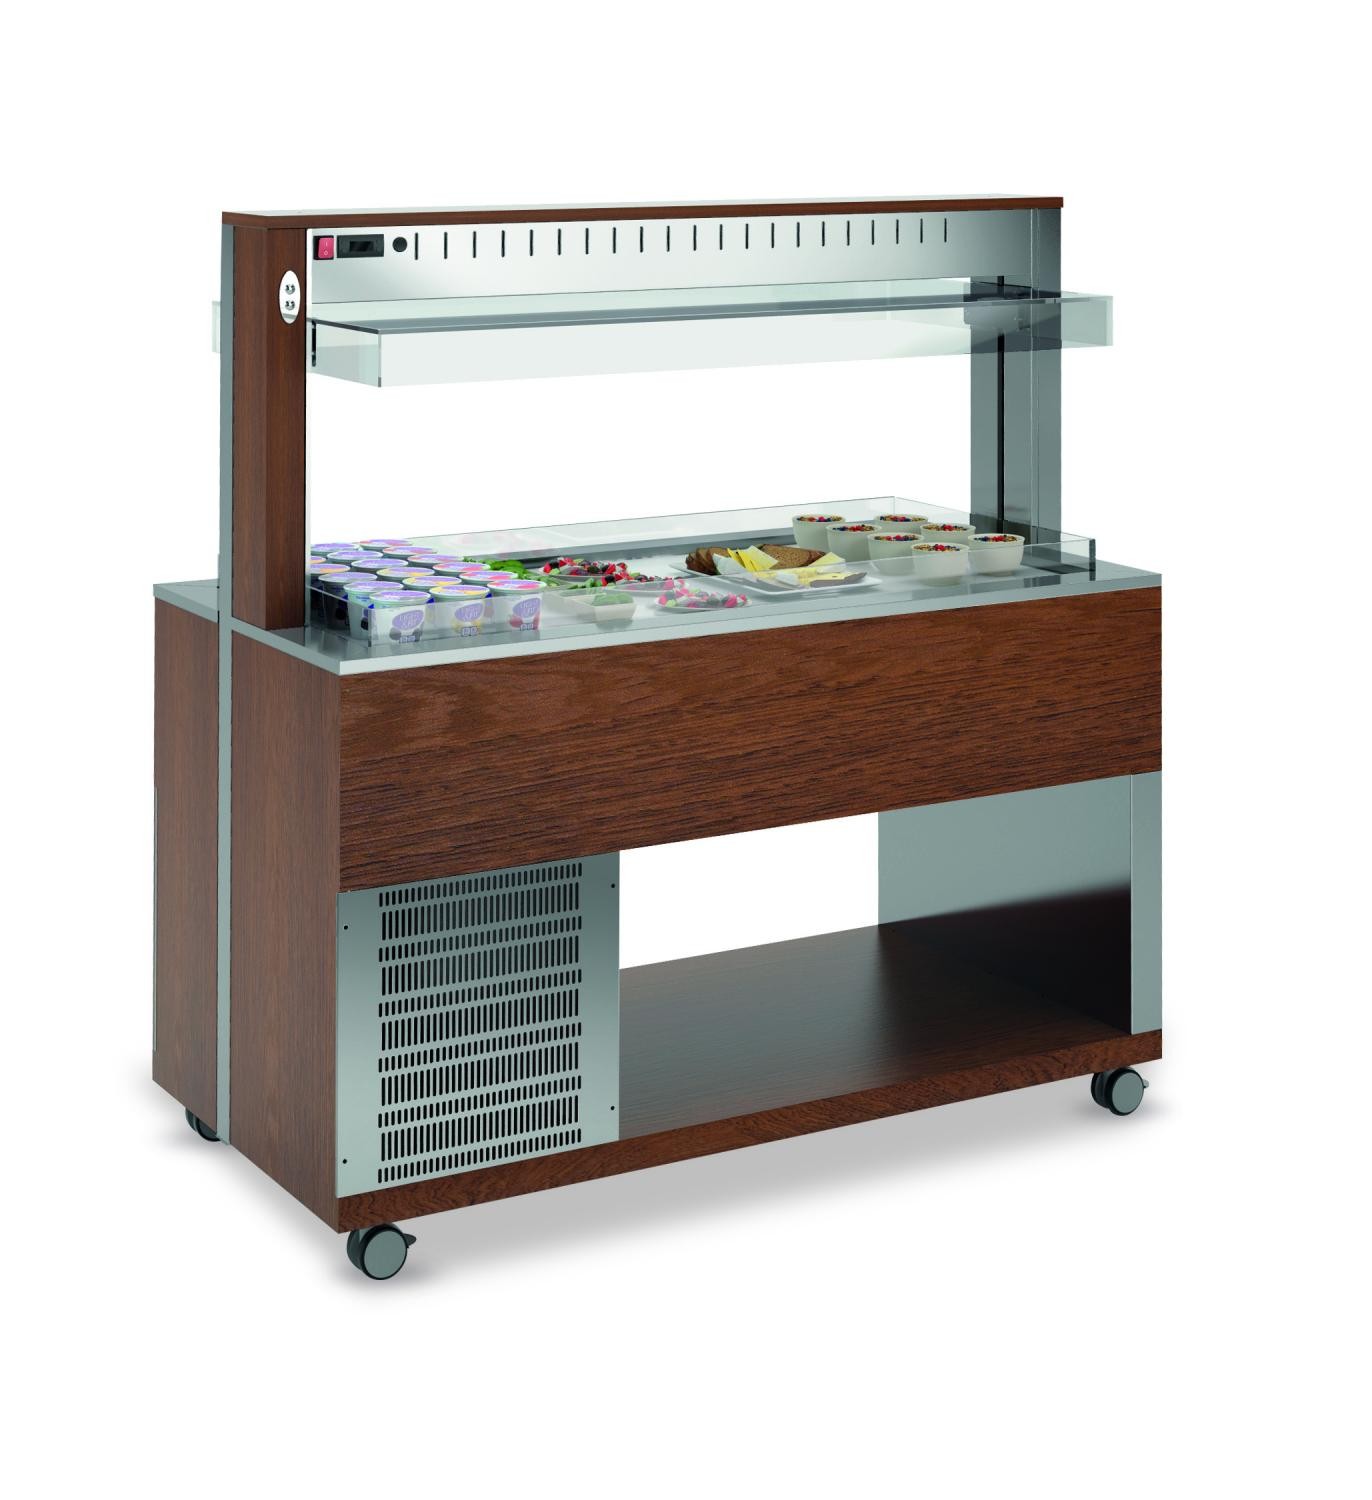 ATHENA PR/M - Hanex® refrigerated countertop